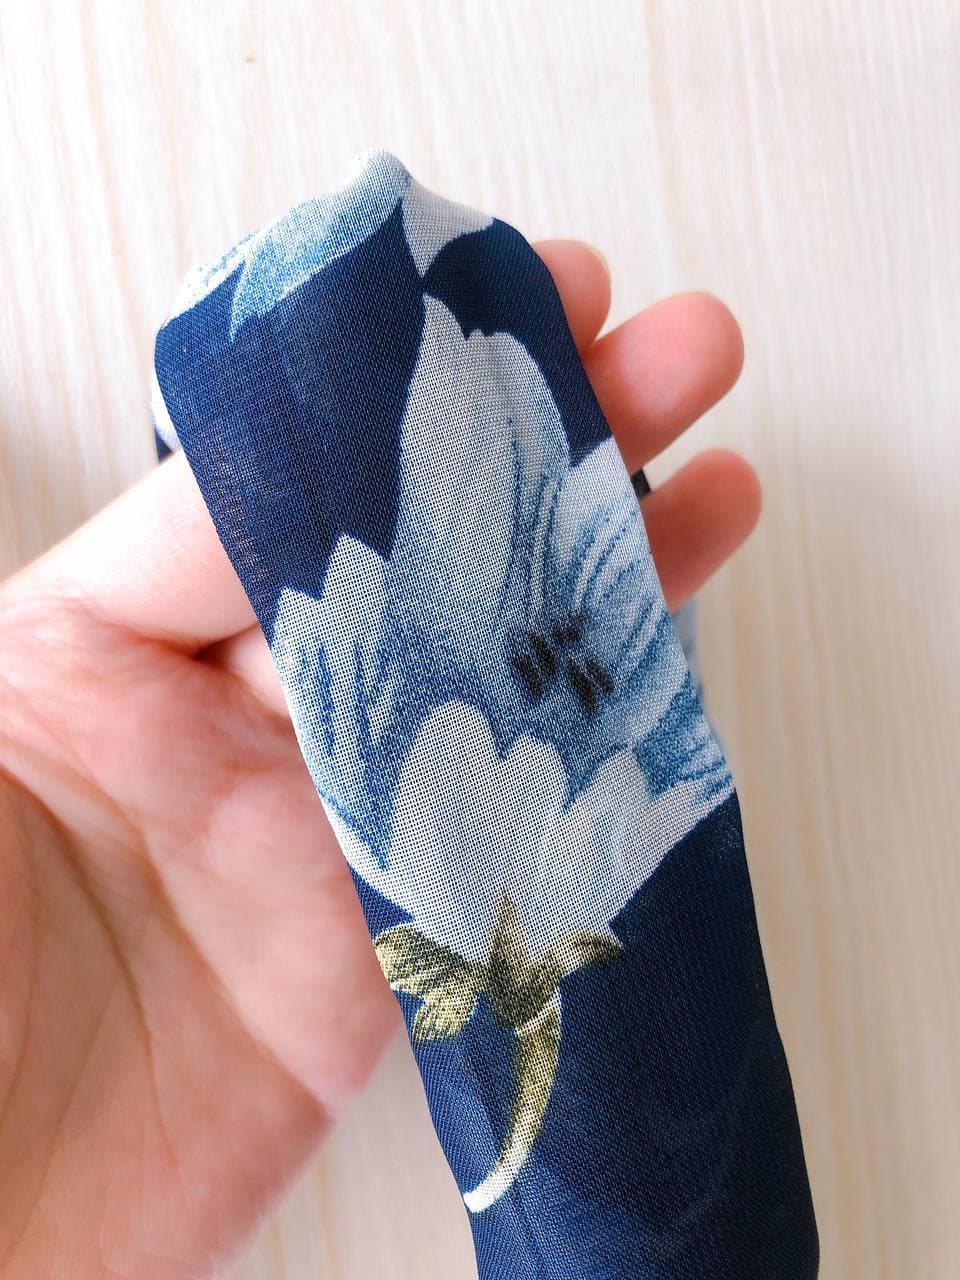 韓式人工髮帶 - 藍底小白花